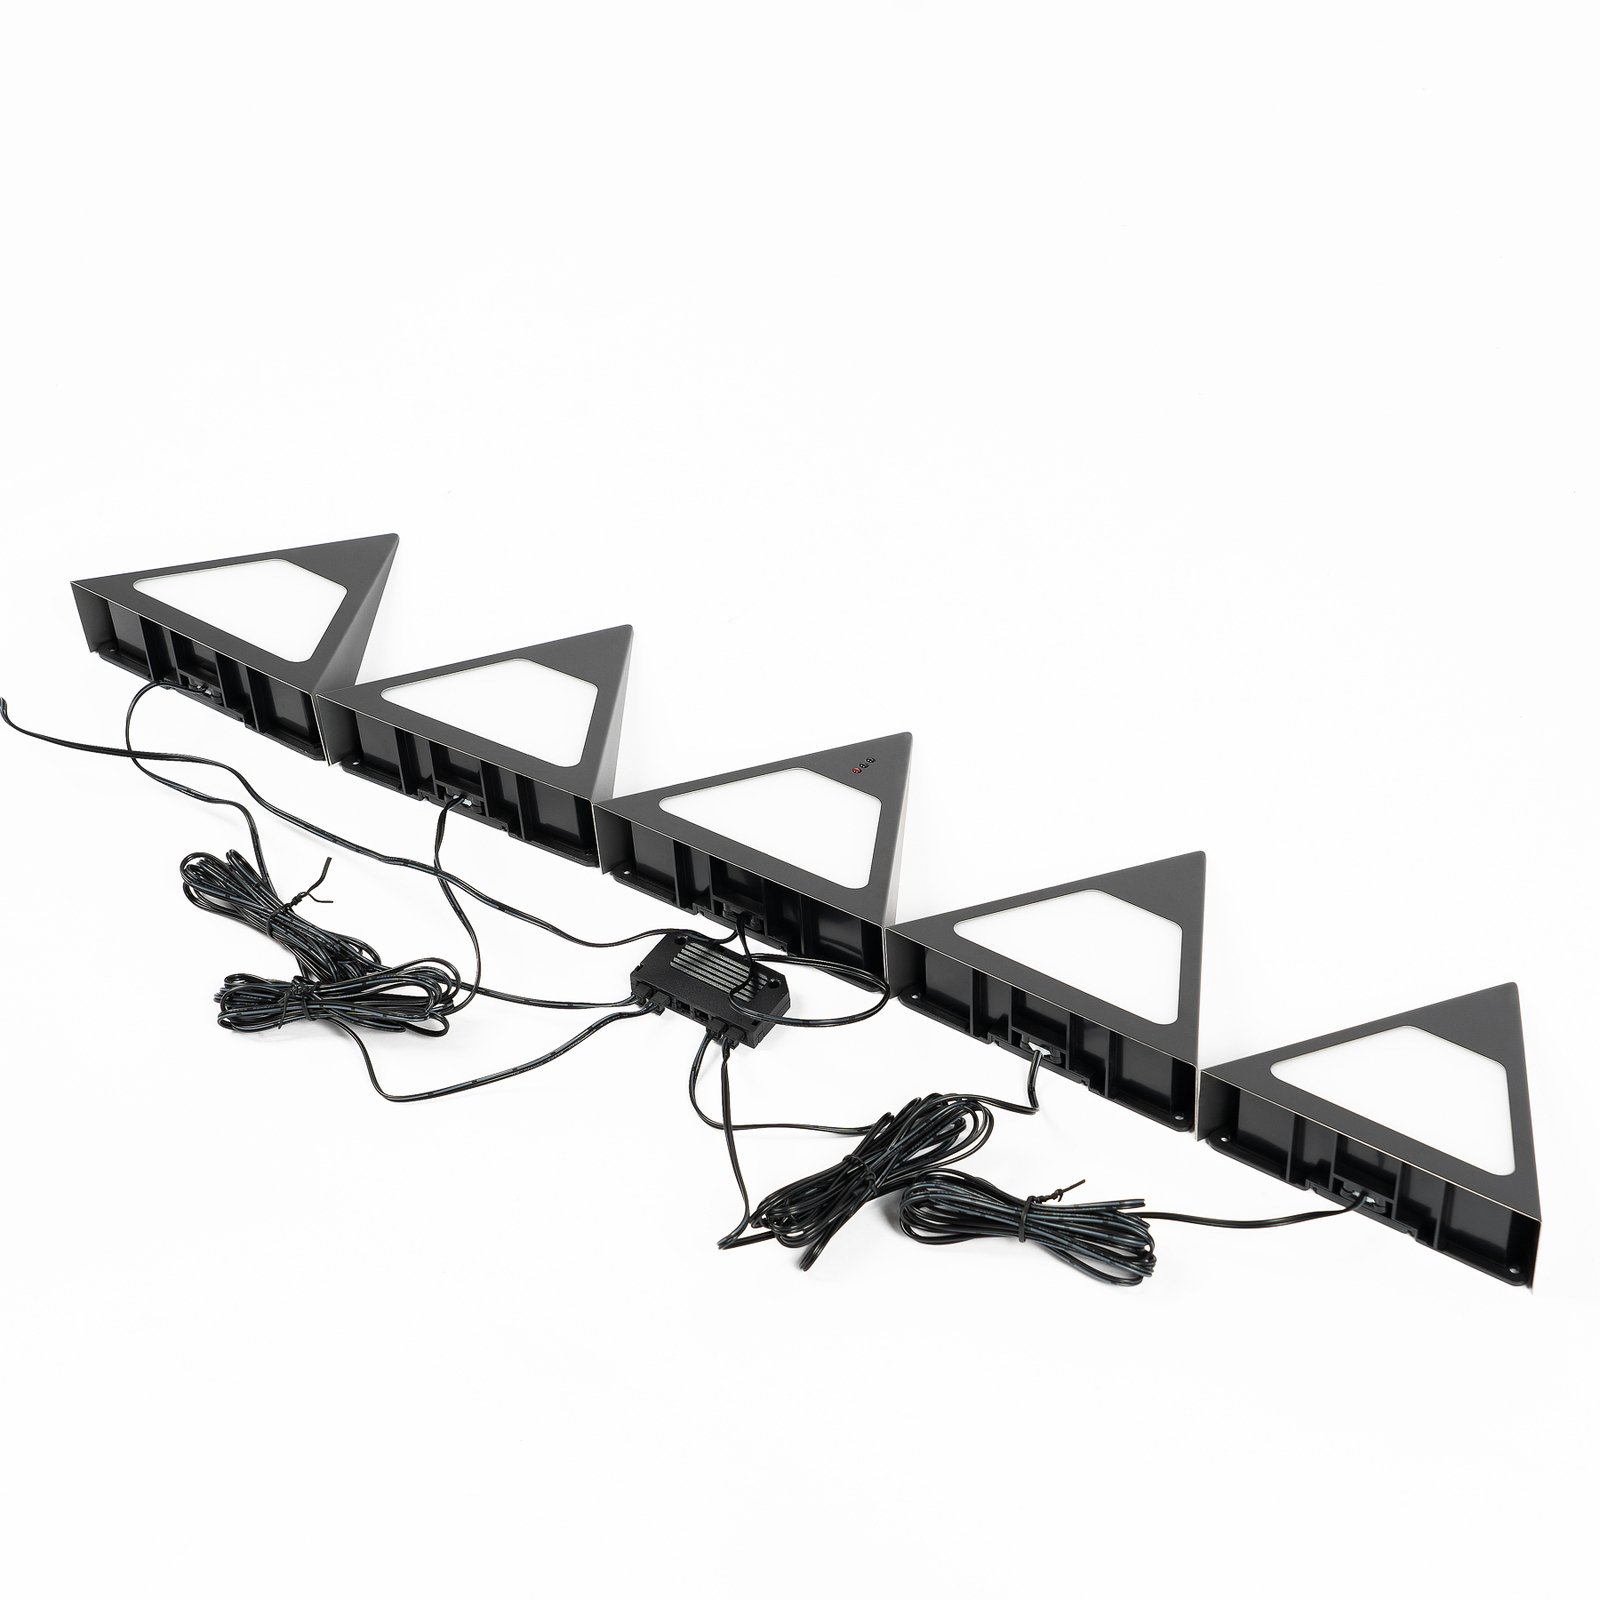 Prios Odia LED-es szekrény alatti lámpa, fekete, 5 darabos szett